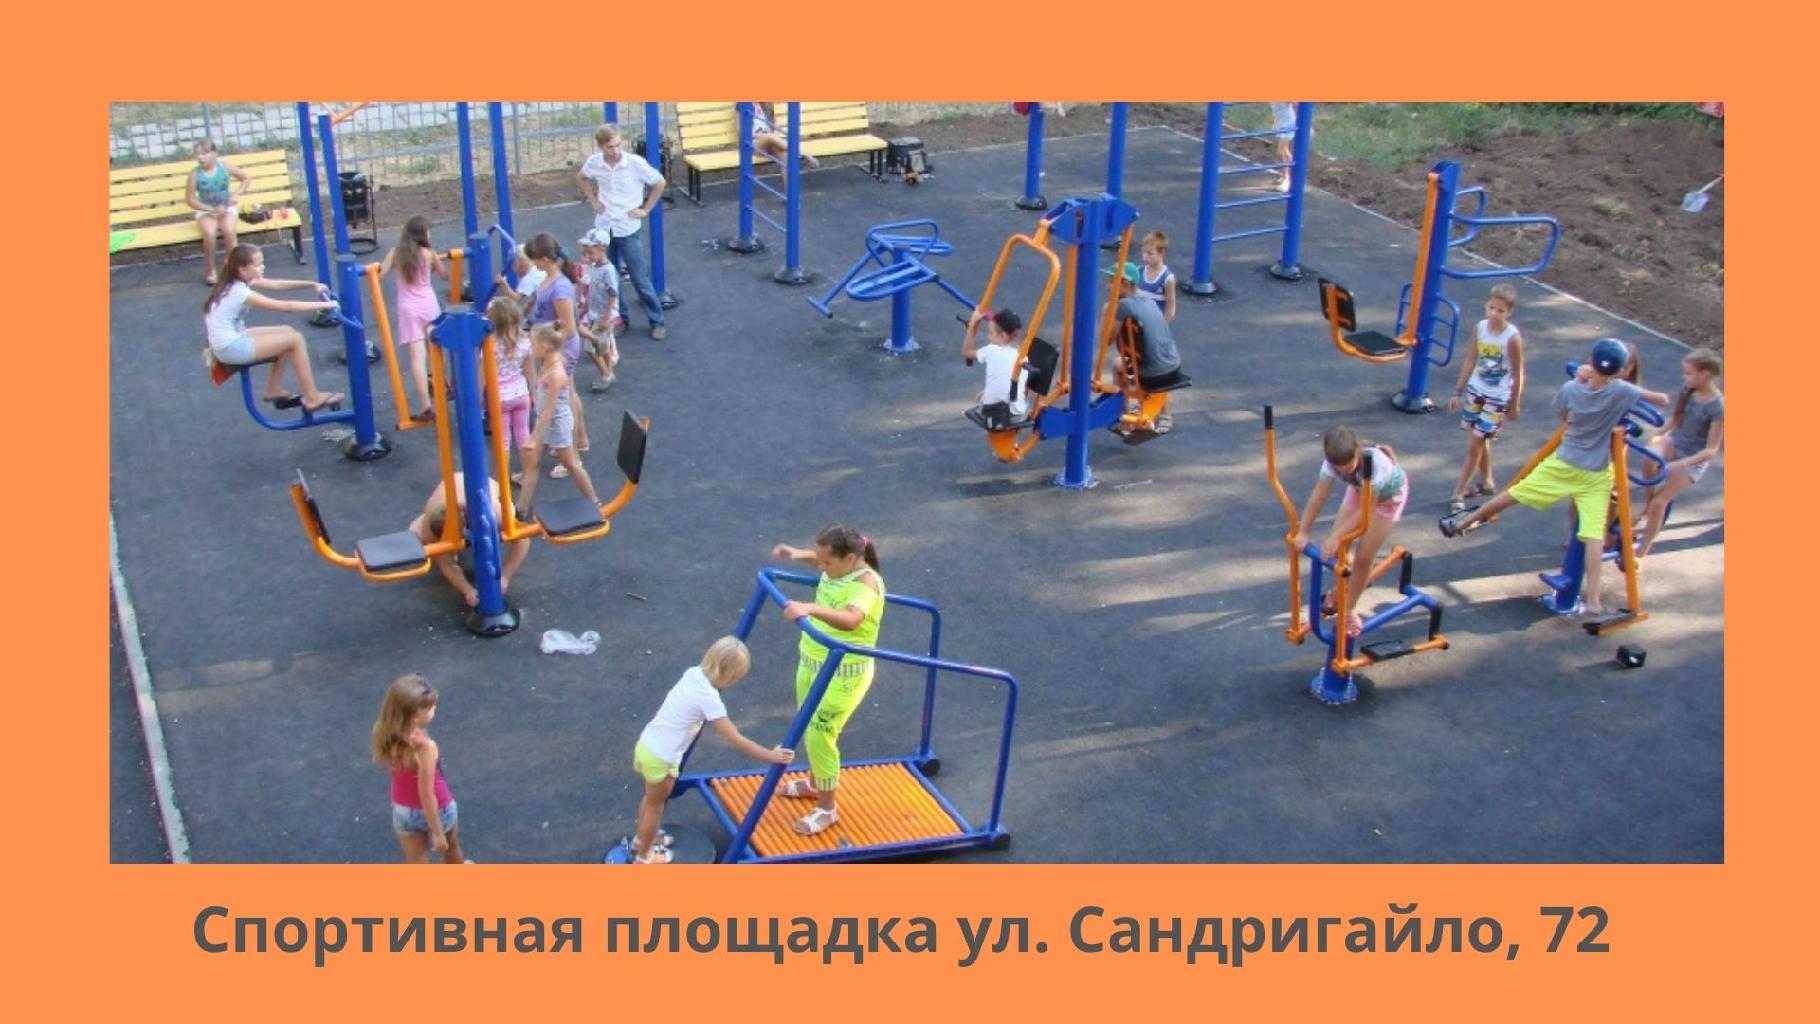 Детские площадки необходимы для обеспечения комфортного проживания молодой семьи в городе, так как детям необходимо пространство для прогулок и игр.
Дети нуждаются в достаточном пространстве, где вы можете просто позволить им быть детьми, передвигаться, играть и веселиться на открытом воздухе. Дети могут выполнять целую кучу мероприятий, когда они играют на детской площадке, поскольку они могут копать, бегать, лазать, качаться и играть с другими детьми всех возрастов. Это, по сути, одна из причин, почему установка игровых площадок имеет важное значение для общества. Игровые площадки необходимы для физического, социального, эмоционального и познавательного развития детей.